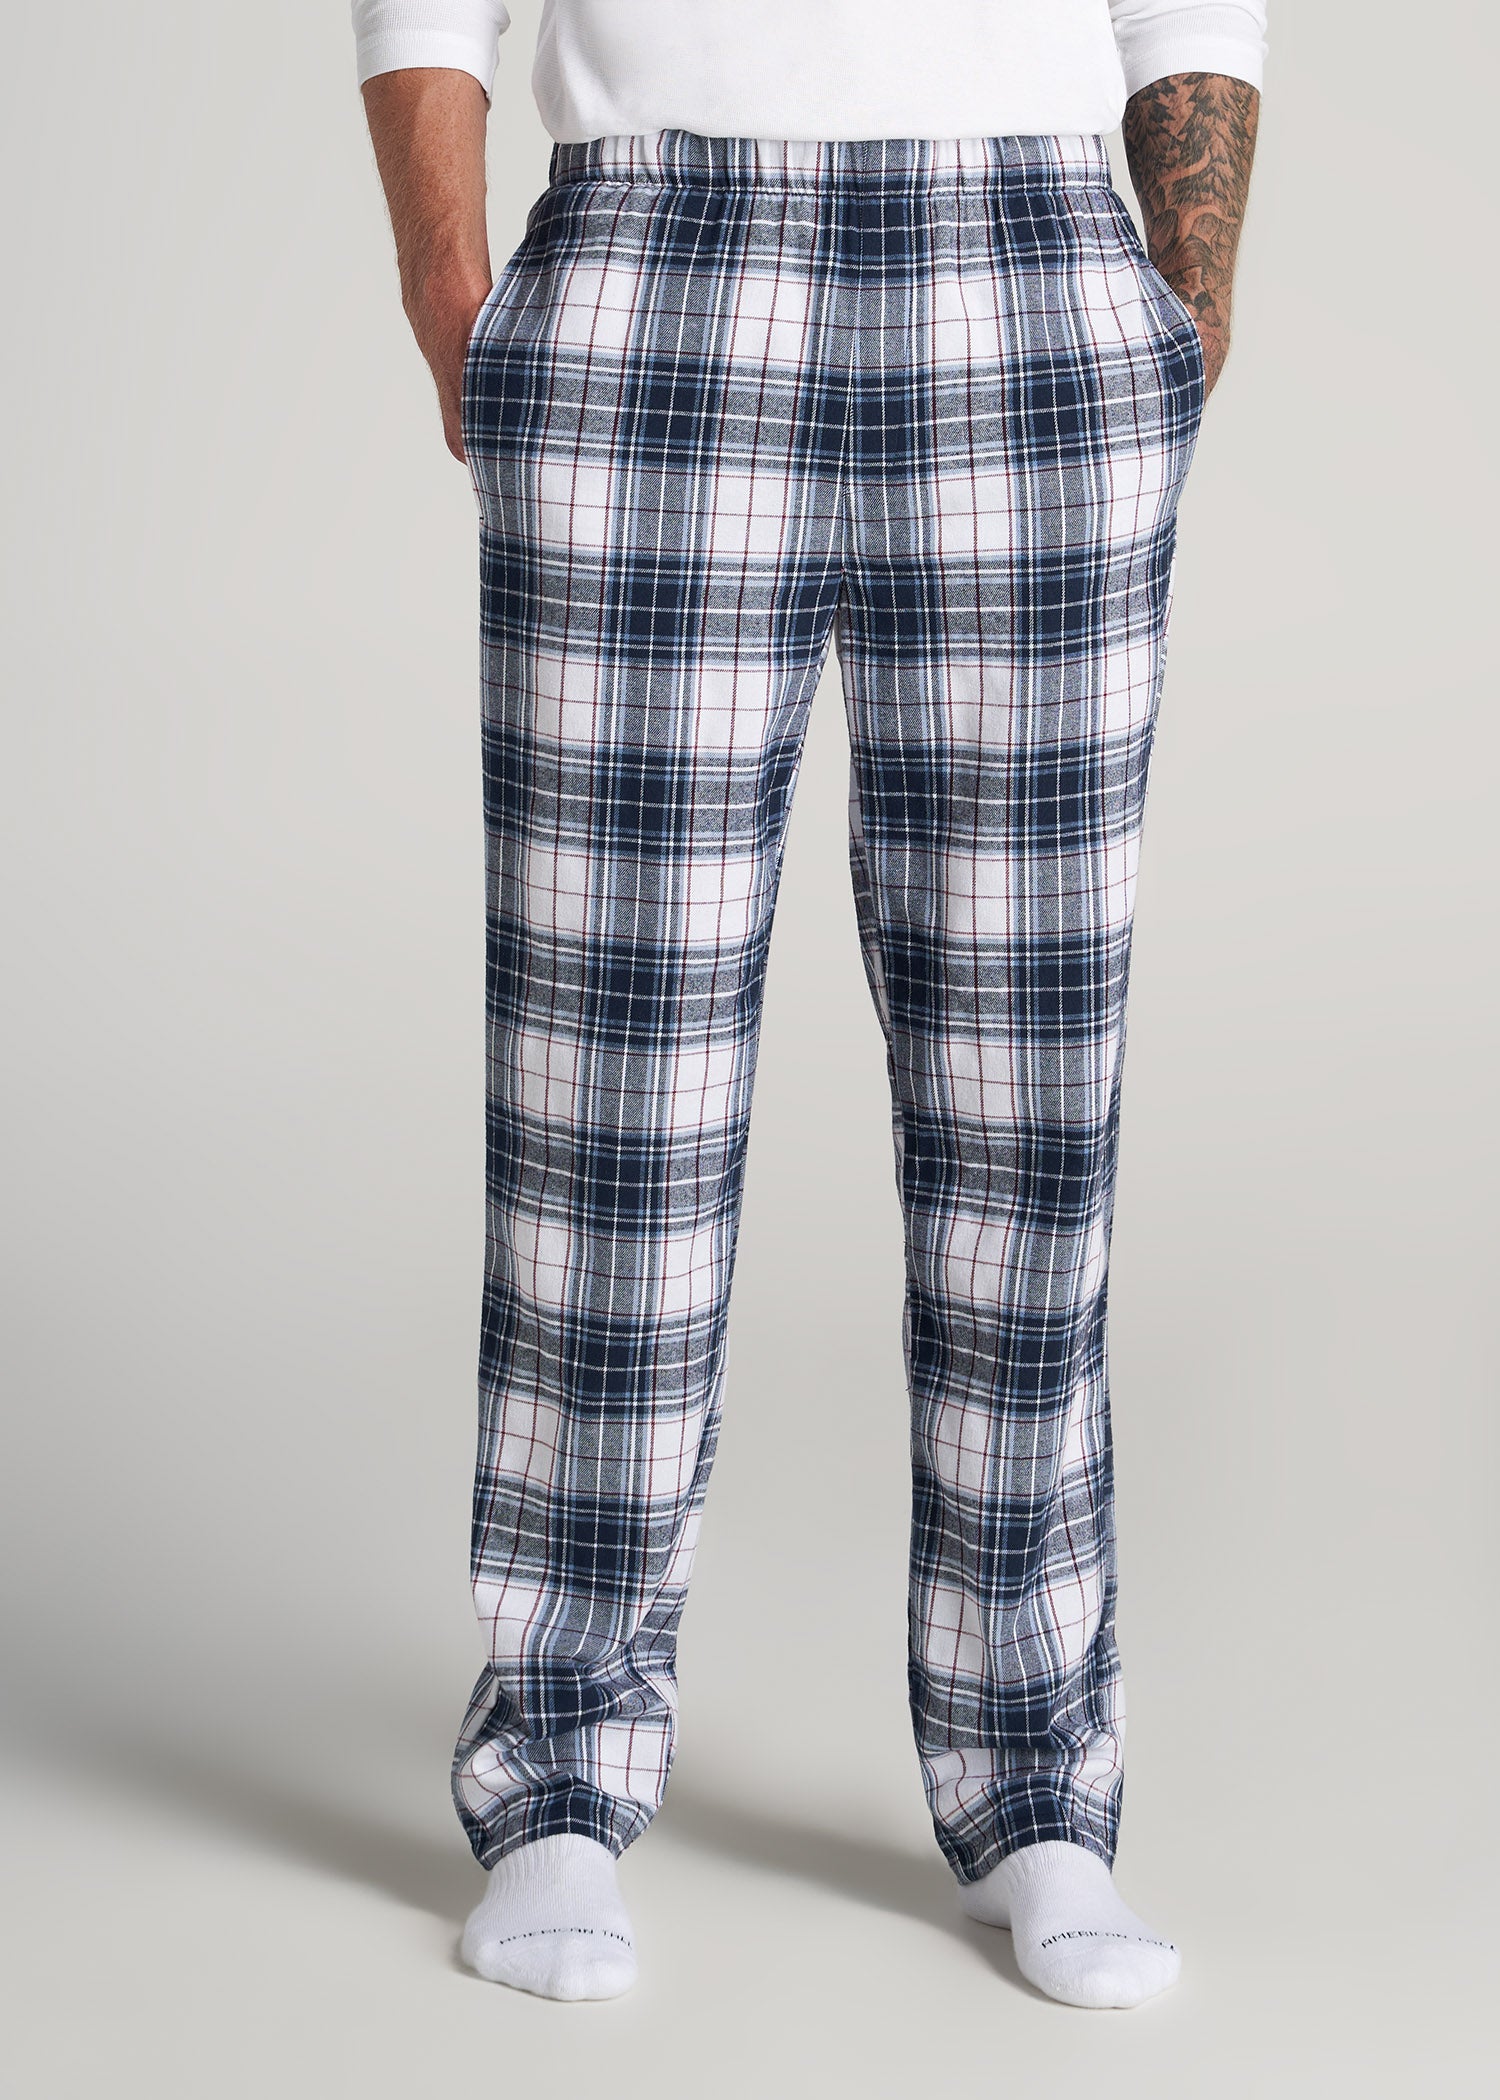 Pajama Pants for Tall Men American